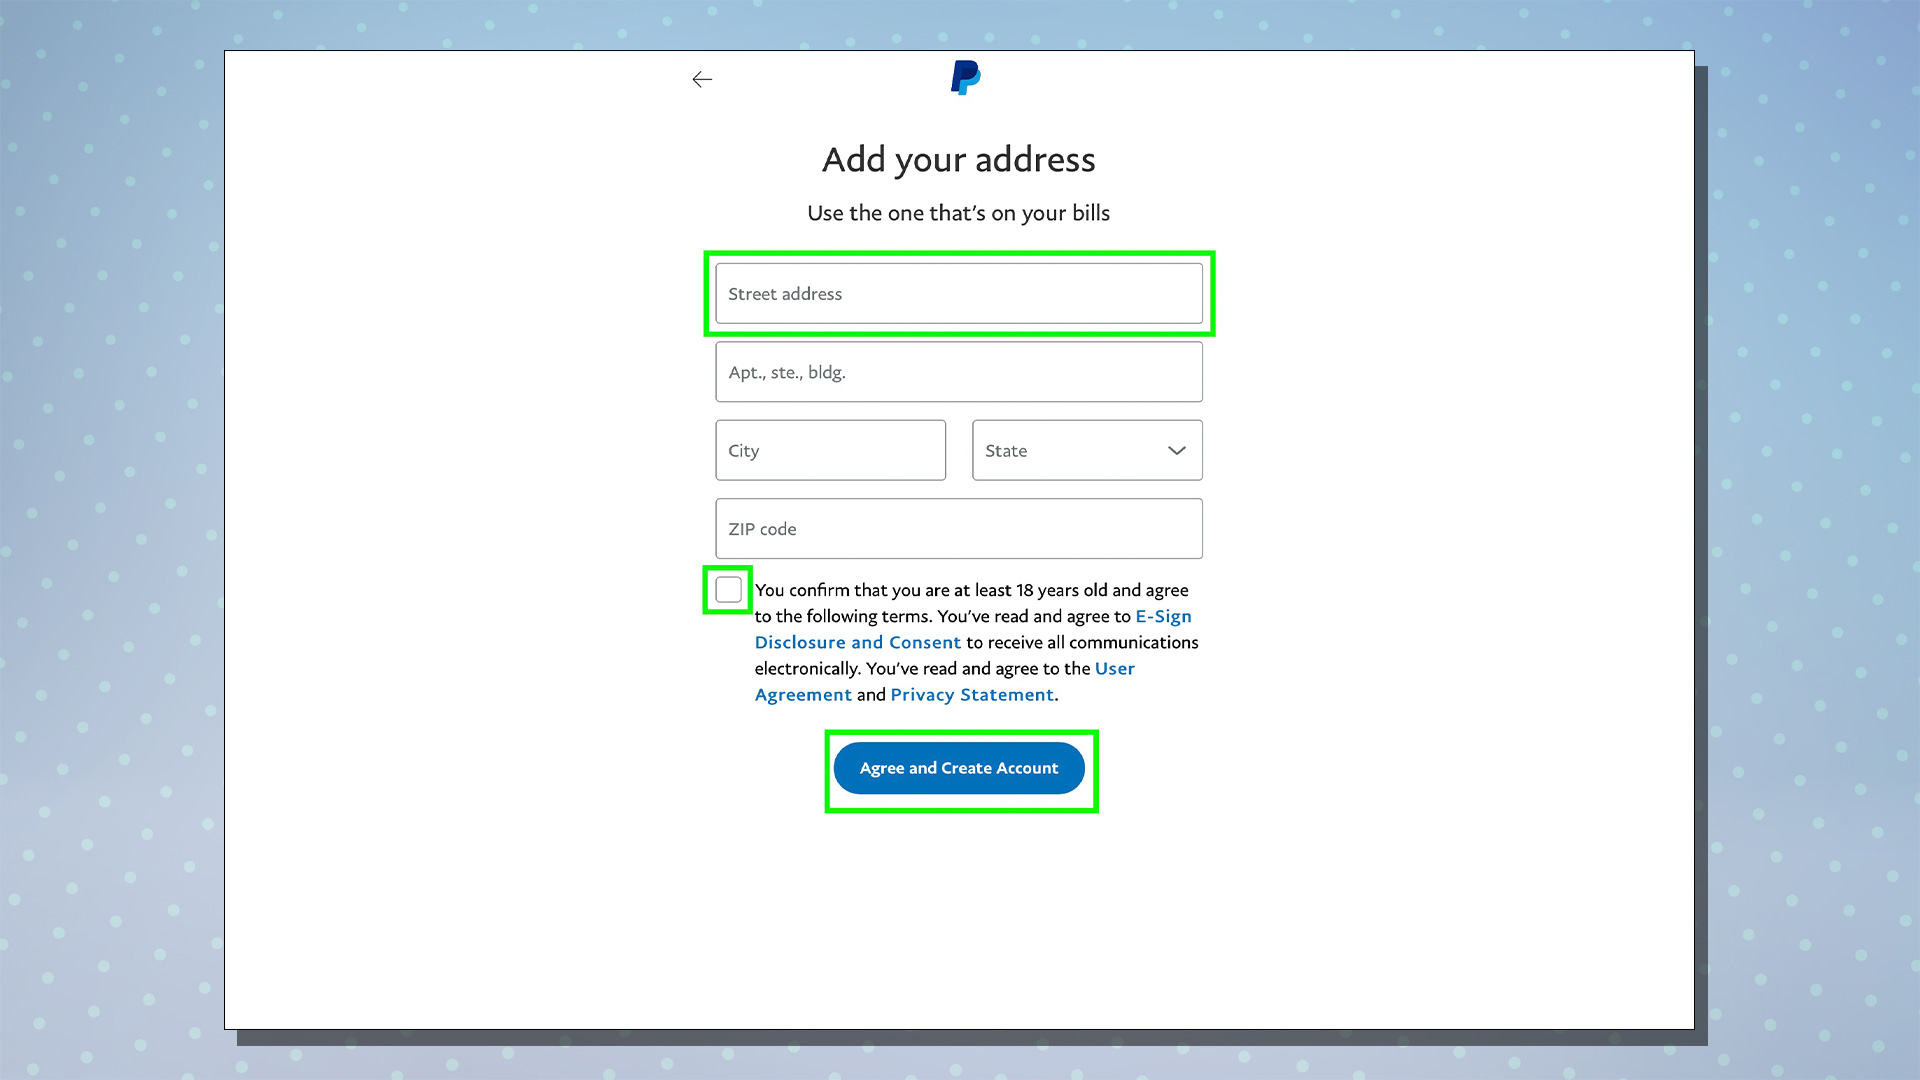 PayPal kurulum sürecini gösteren bir ekran görüntüsü.  Bu ekran adres seçeneklerini gösterir.